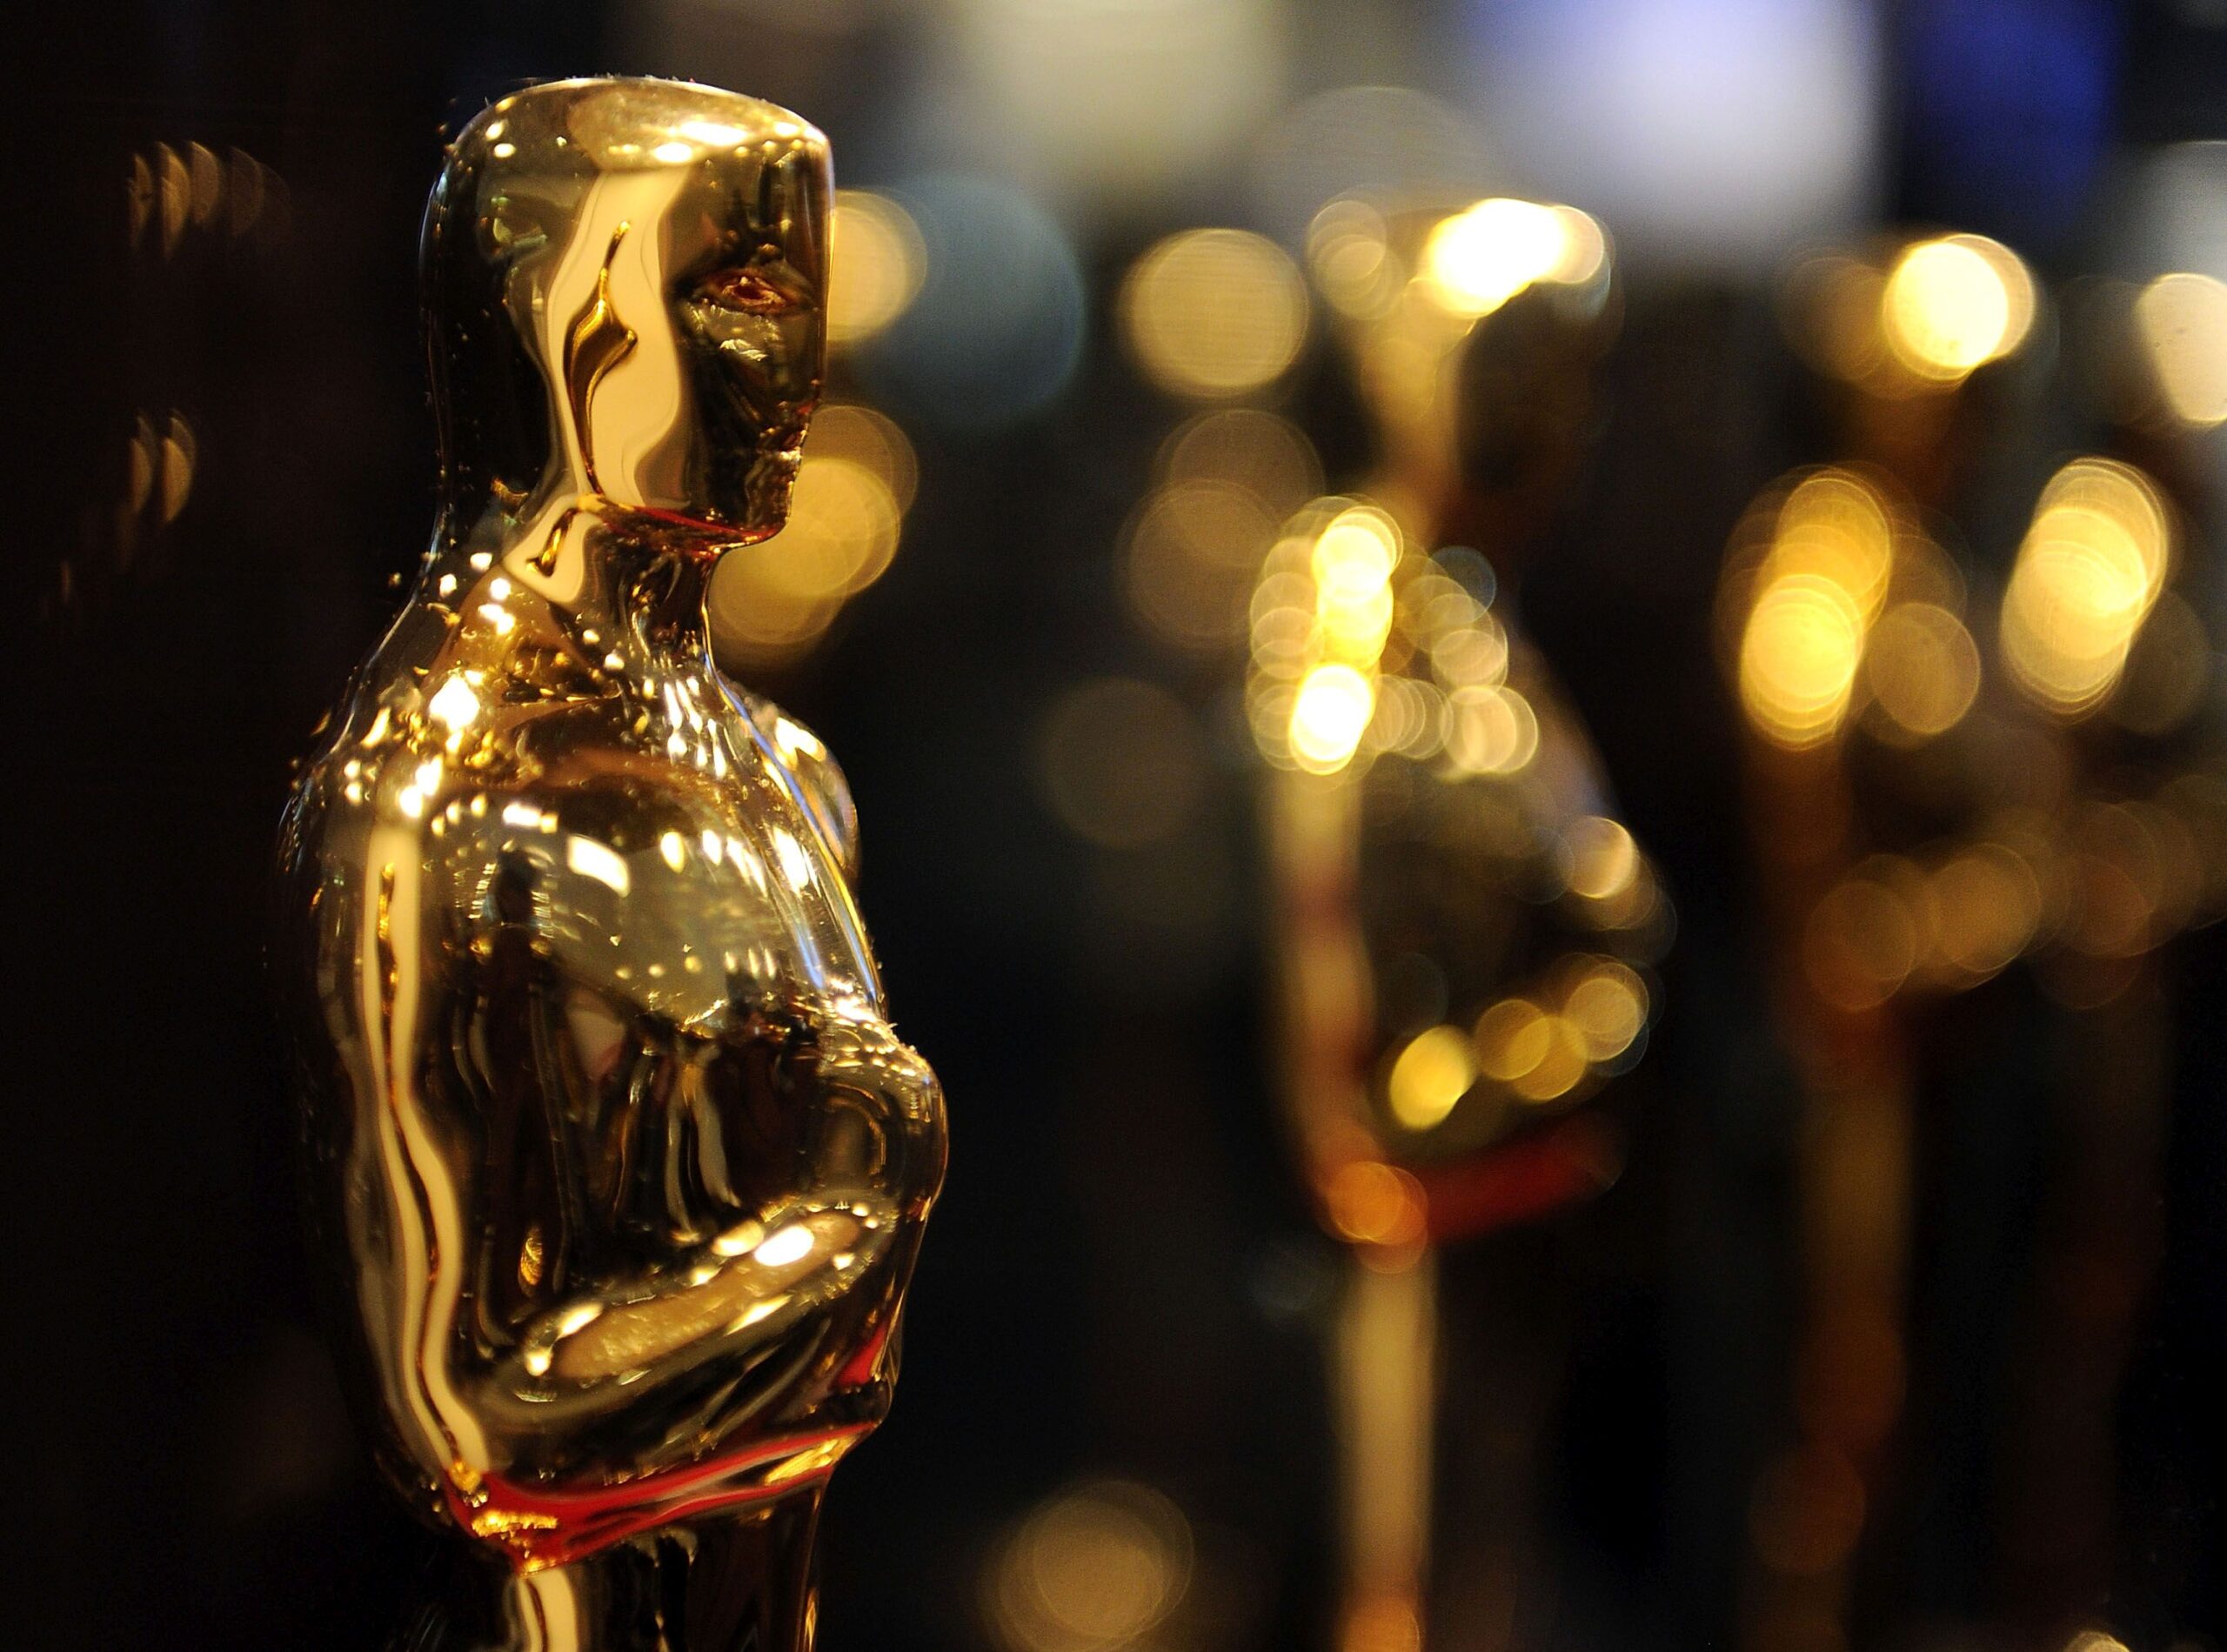 Statuete oferite nominalizaților la Premiile Oscar 2021